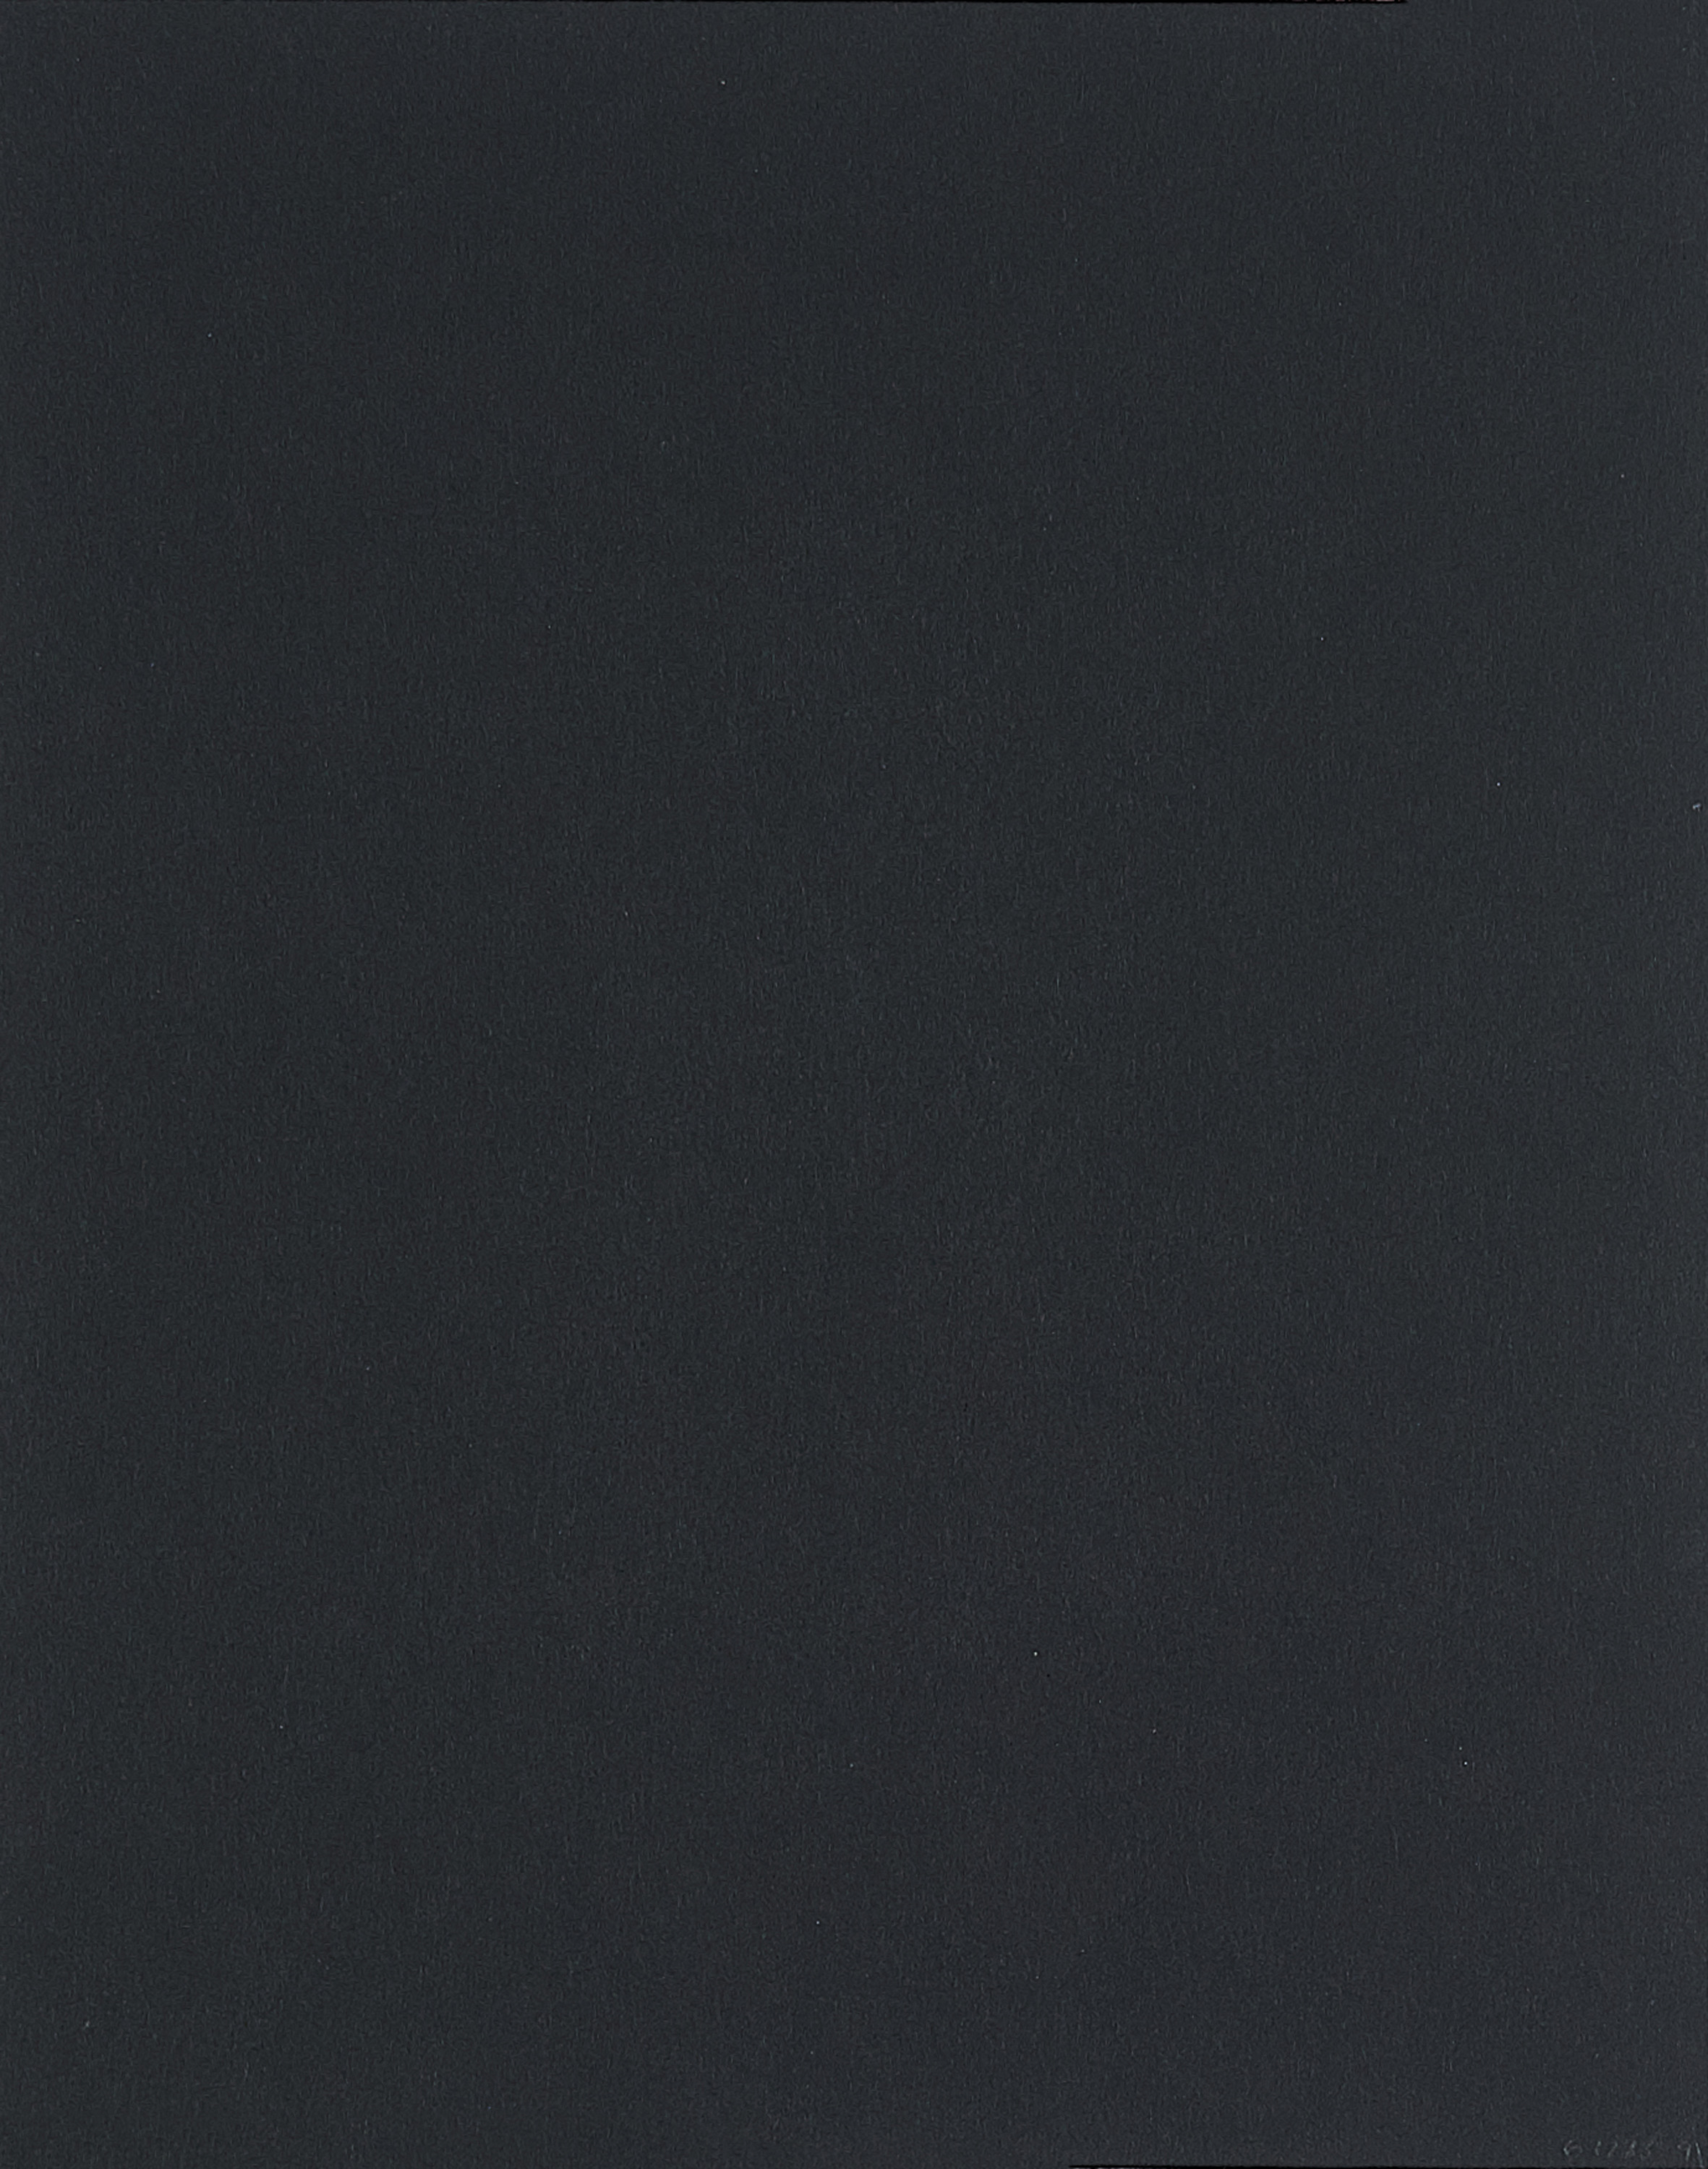 Joseph Beuys - Ulbricht Collection Eintrittskarte zur Ausstellung Tokio, 67223-9, Van Ham Kunstauktionen